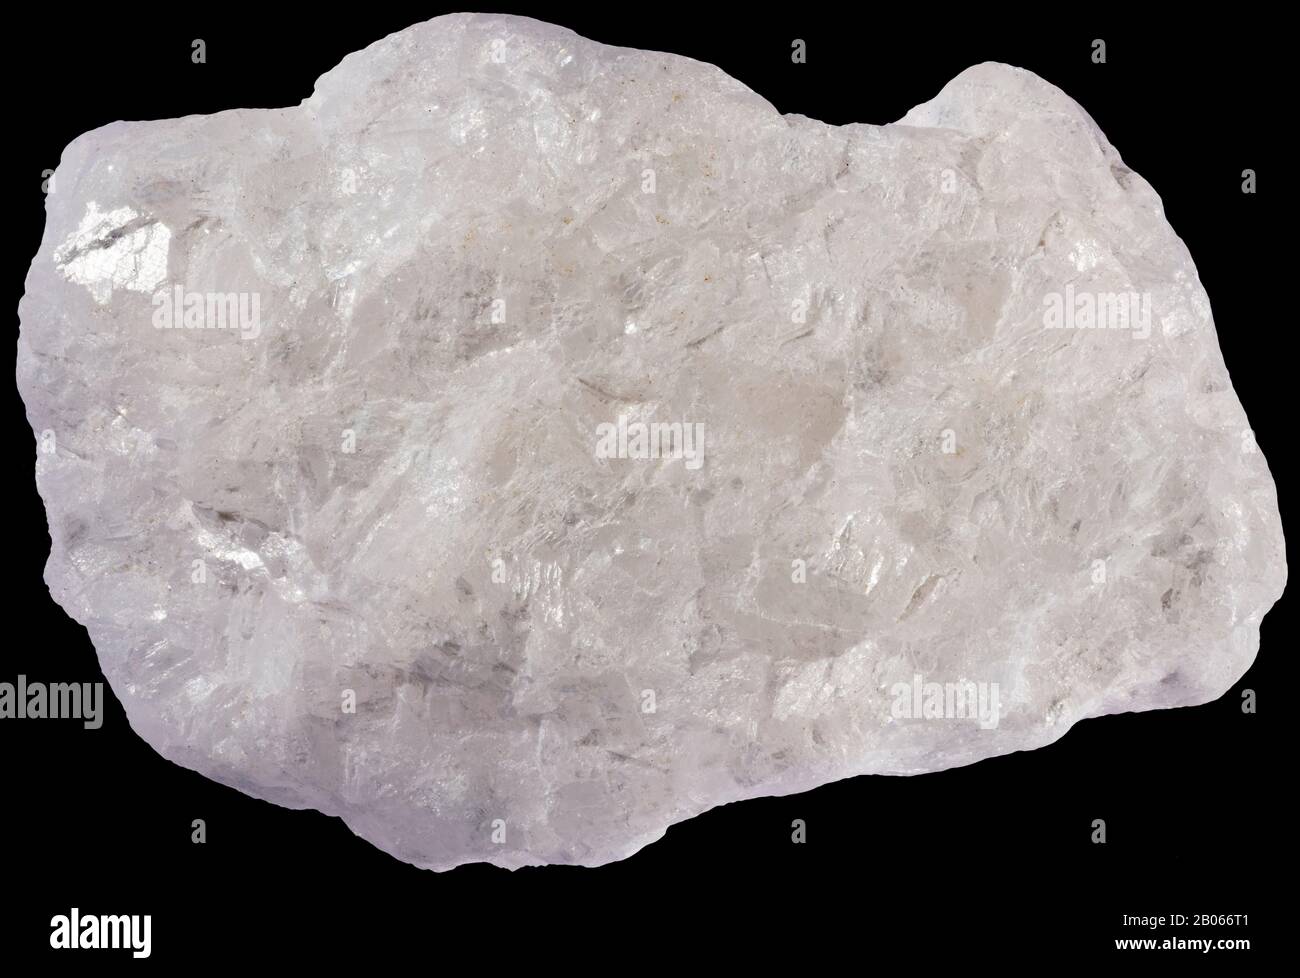 Kristalliner Kalkstein, Karbonat, Grenville, Quebec Kristalliner Kalkstein ist ein metamorphosierter Kalkstein; ein Marmor, der durch Rekristallisation von Limest gebildet wird Stockfoto